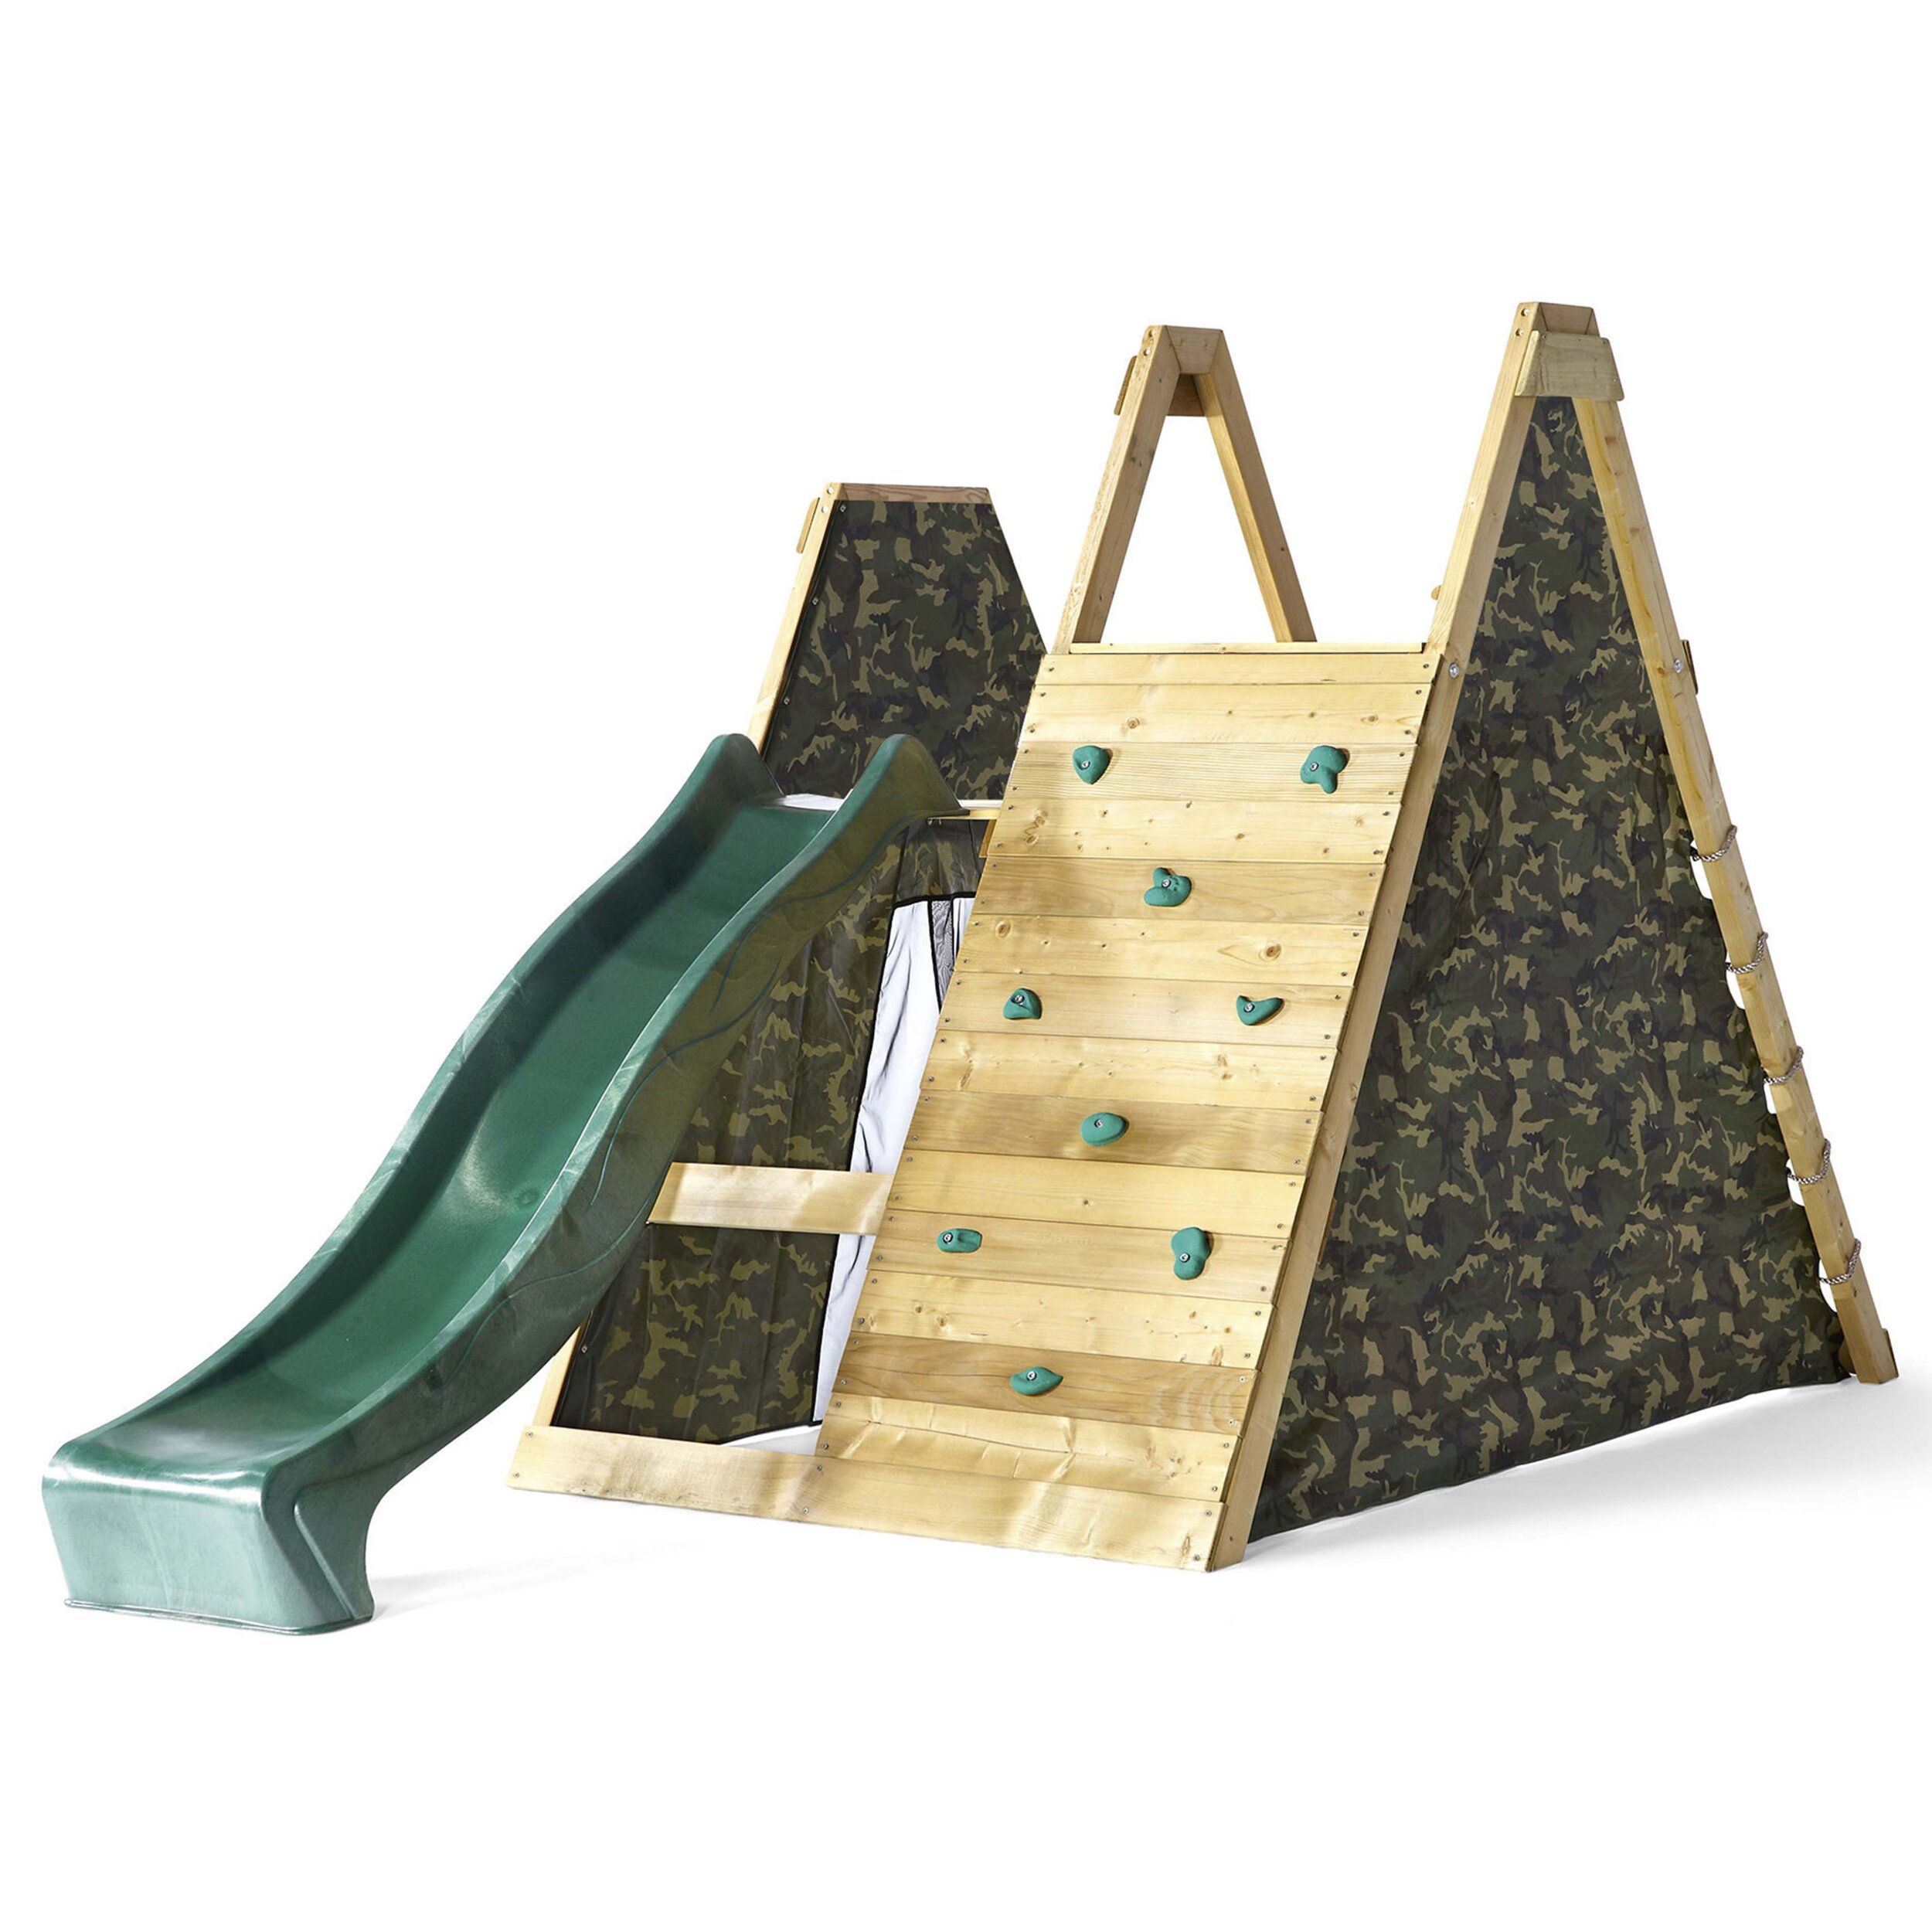 plum-pyramid-legno-centro-giochi-arrampicare-esterno-babylove2000-prodotto-tenda-scivolo.jpg